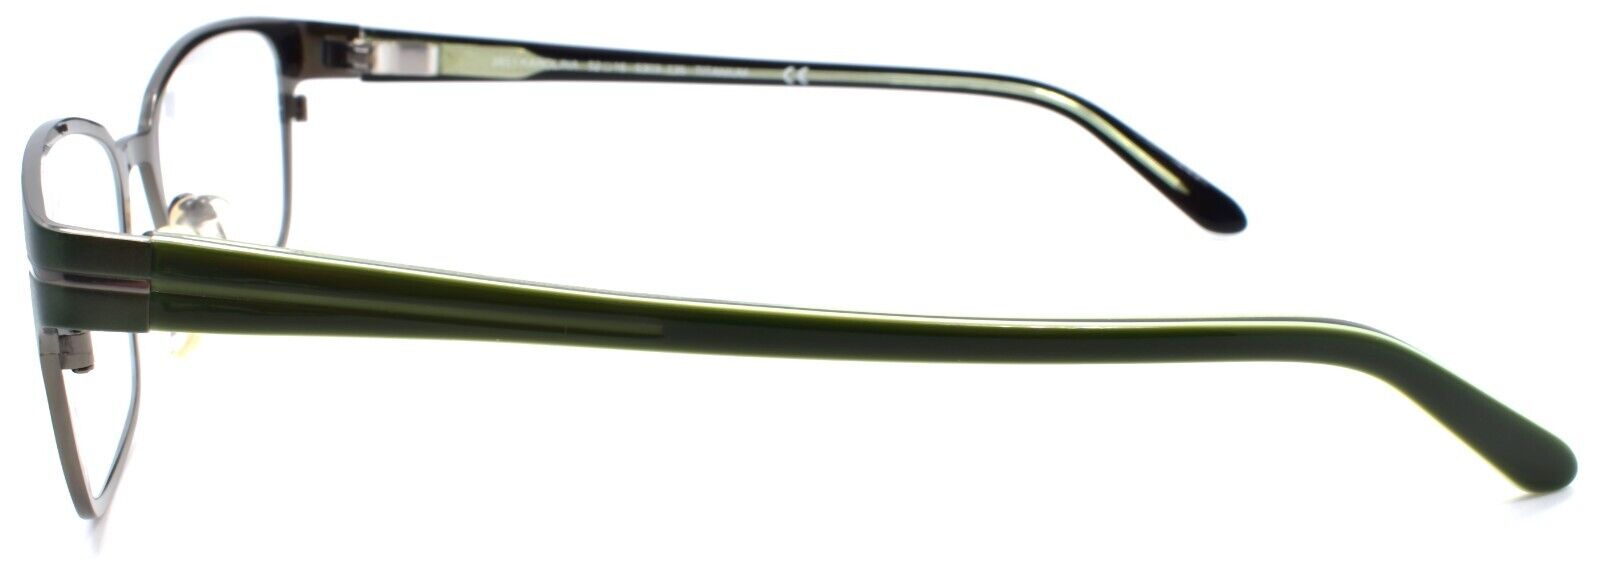 3-Skaga 3851 Karolina 5101 Women's Eyeglasses Frames TITANIUM 52-16-135 Green-Does not apply-IKSpecs